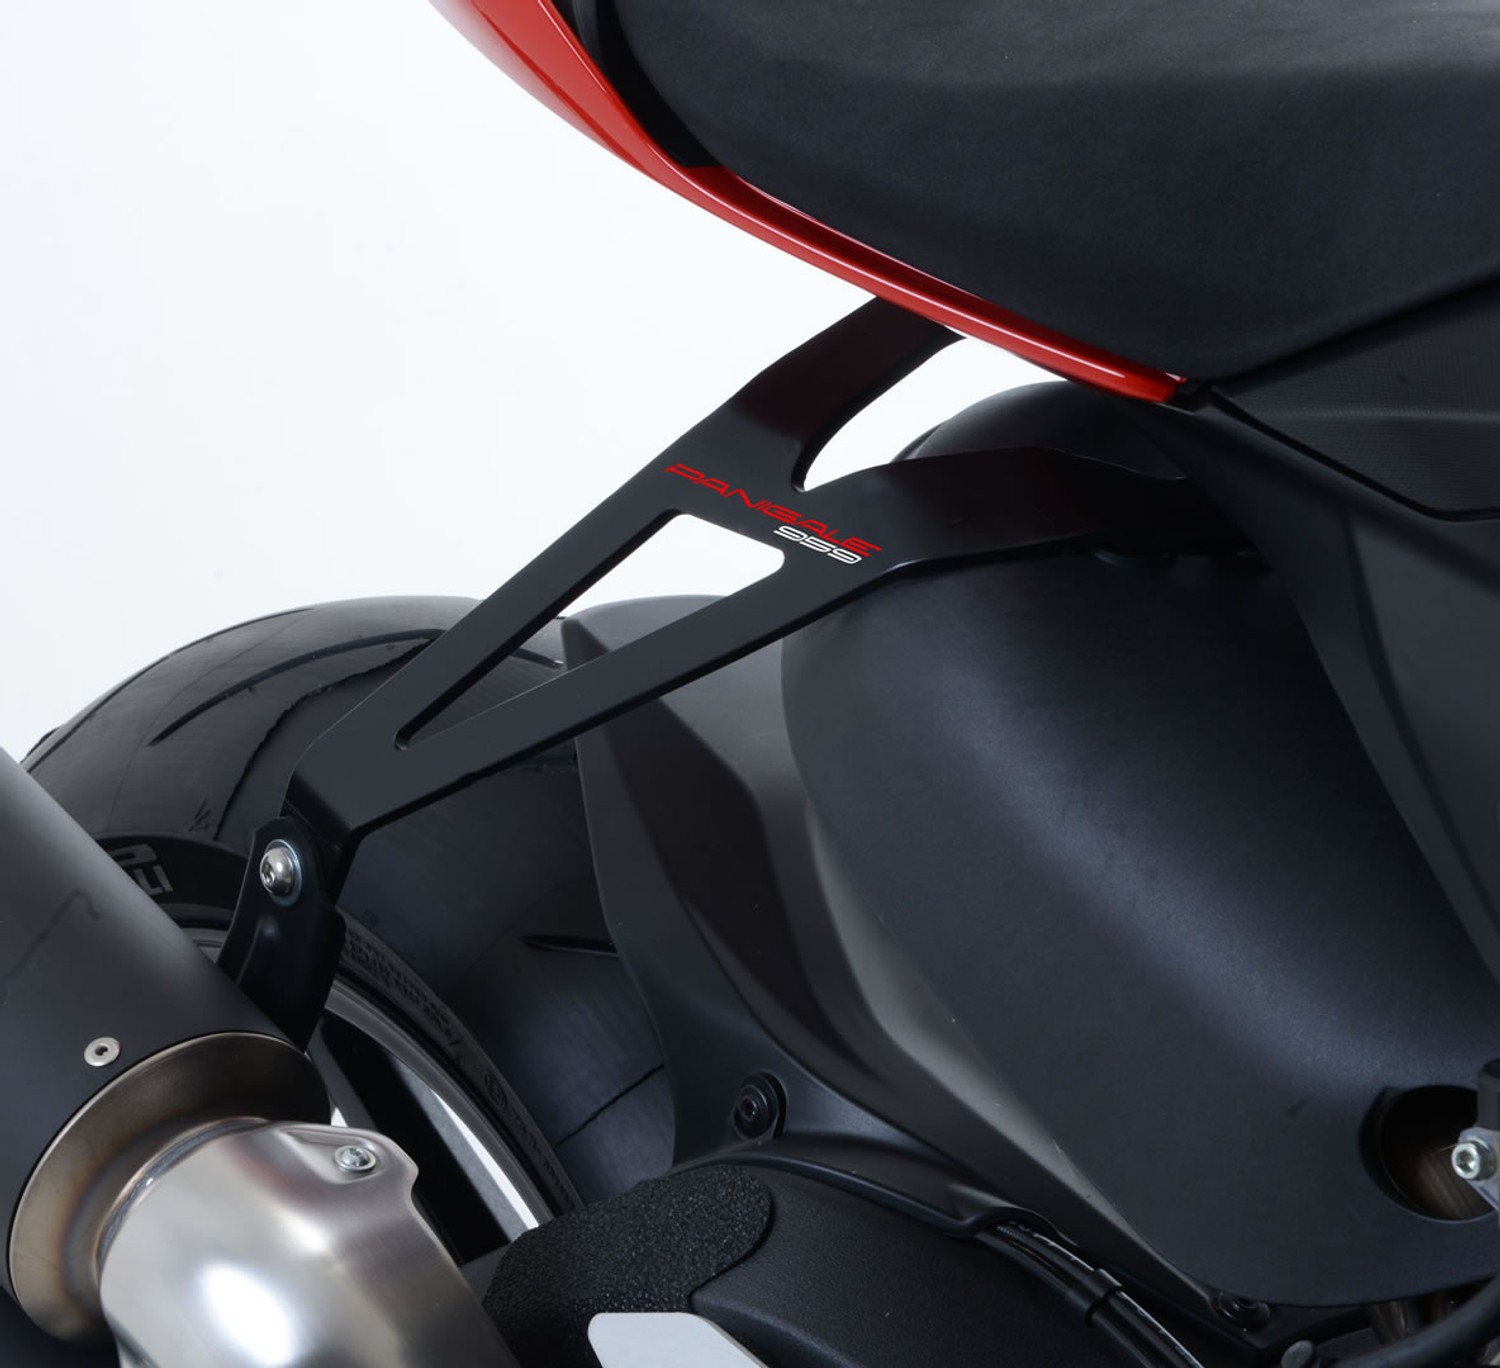 New R & G Soporte de escape Black Ducati Panigale 959 2015-exhaust Hanger 